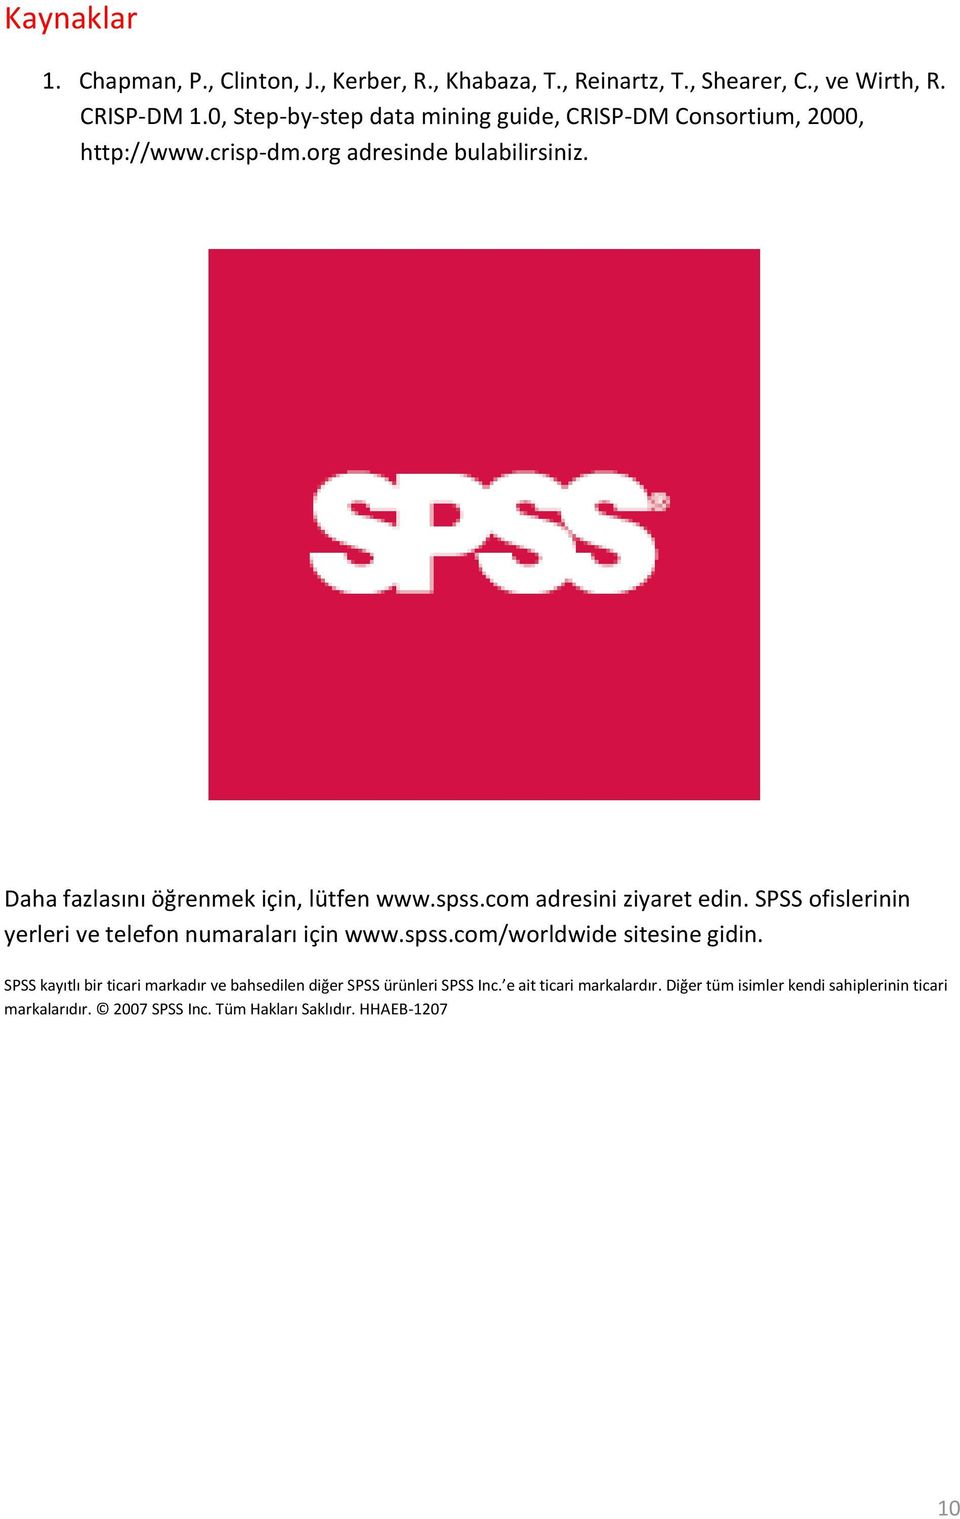 Daha fazlasını öğrenmek için, lütfen www.spss.com adresini ziyaret edin. SPSS ofislerinin yerleri ve telefon numaraları için www.spss.com/worldwide sitesine gidin.